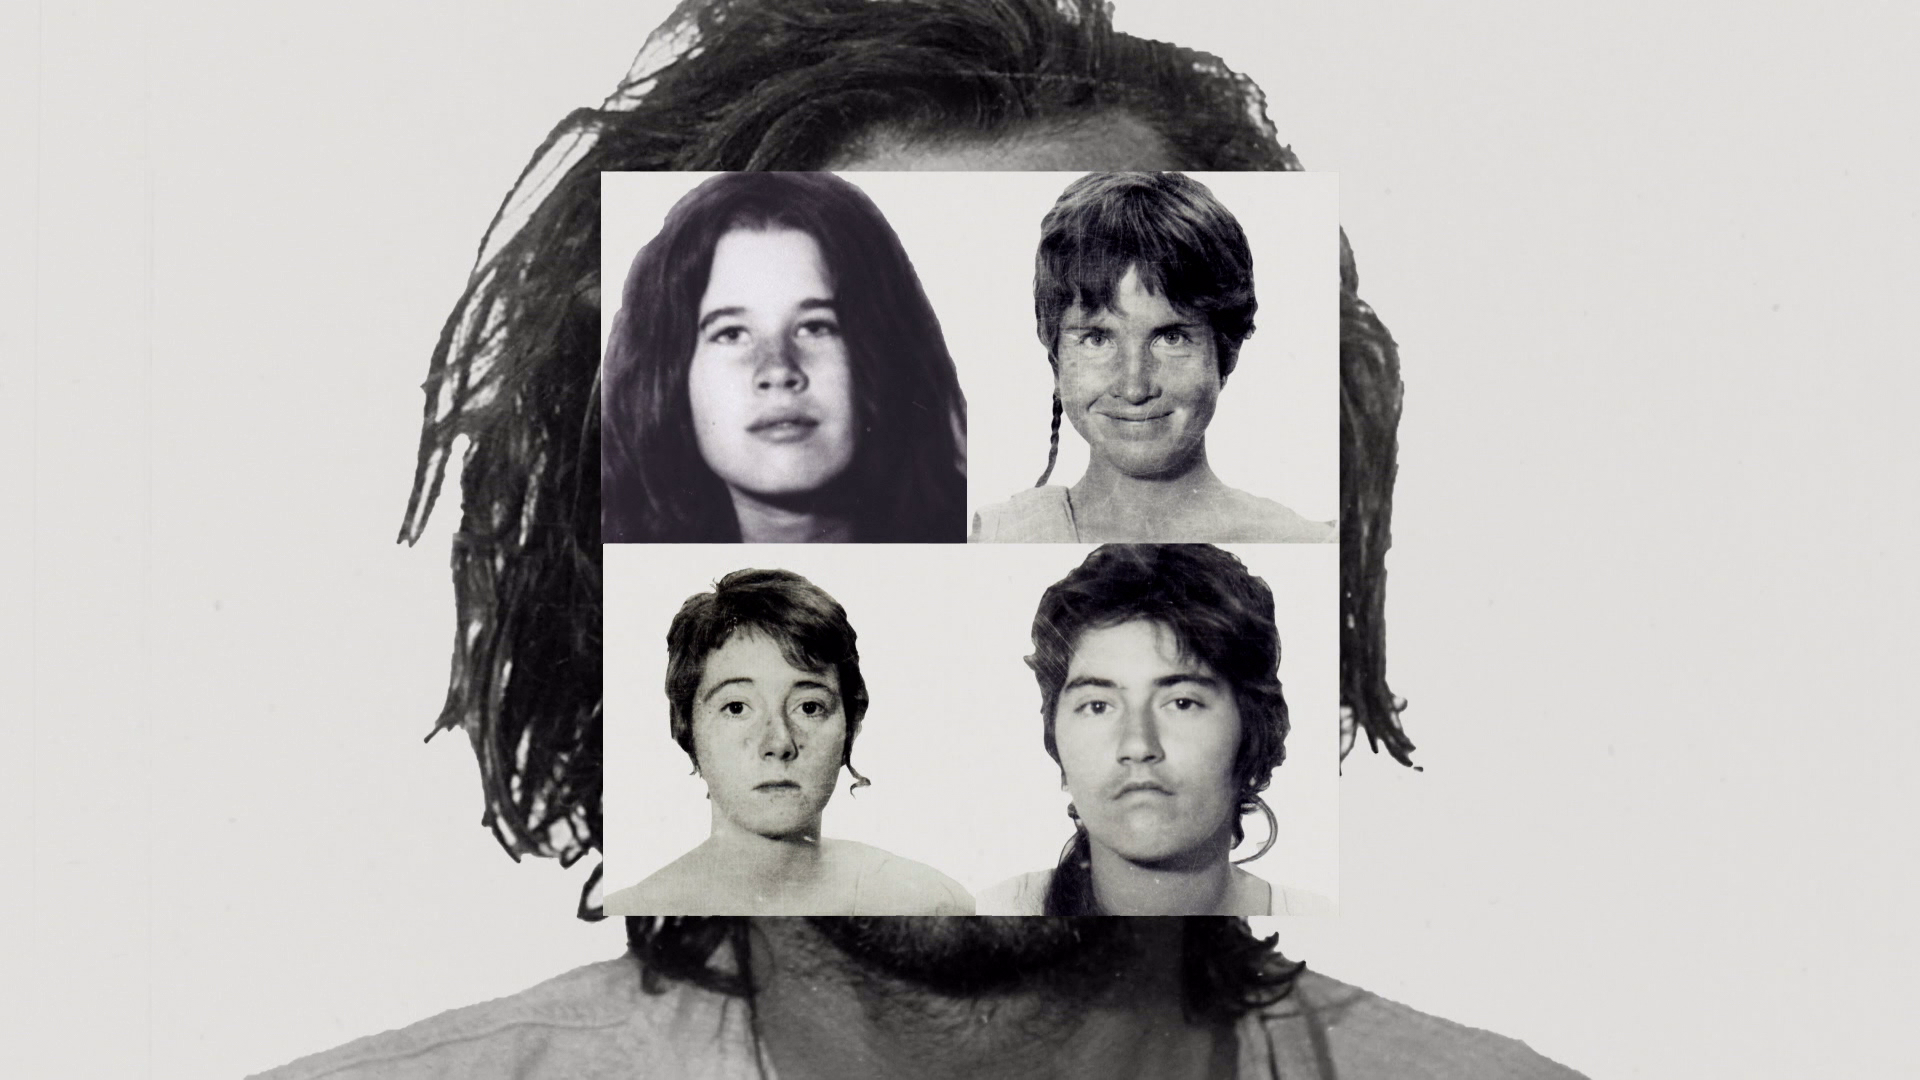 ‘Las mujeres de Manson’: AMC CRIME se adentra en la famosa secta con el testimonio en exclusiva de cuatro integrantes de La Familia